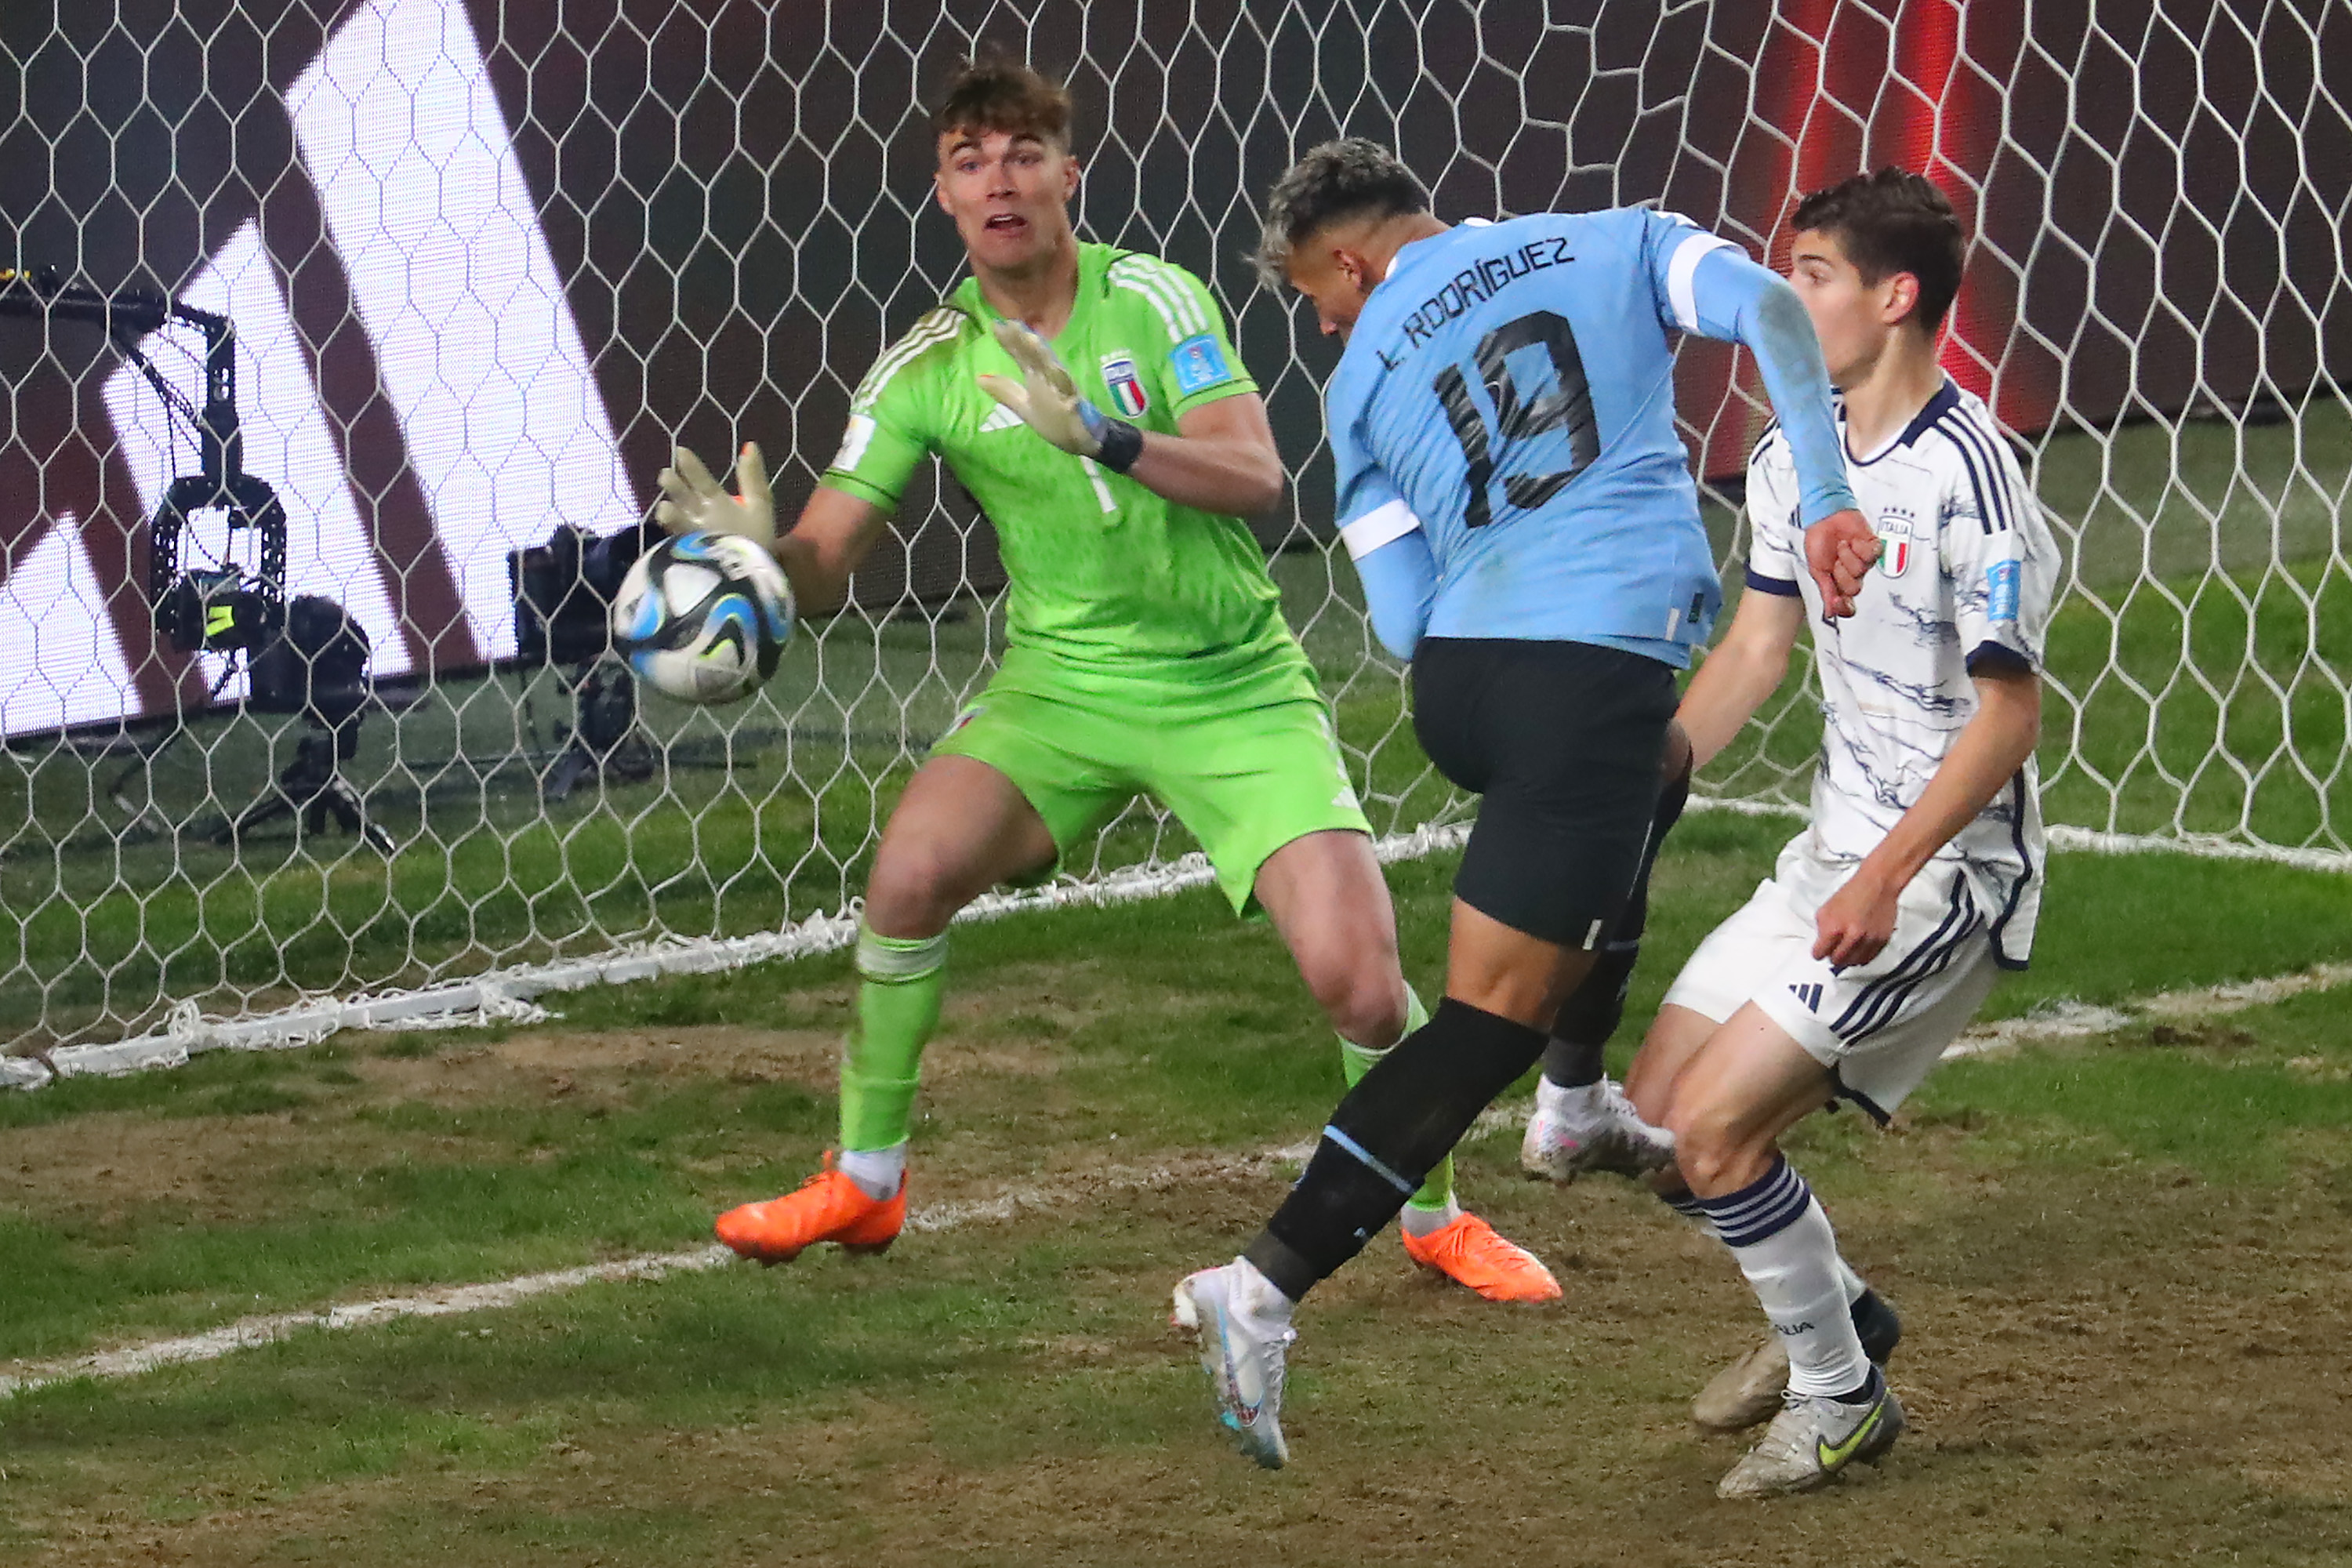 Italia U20, delusione Mondiale: l'Uruguay nel finale beffa gli azzurri